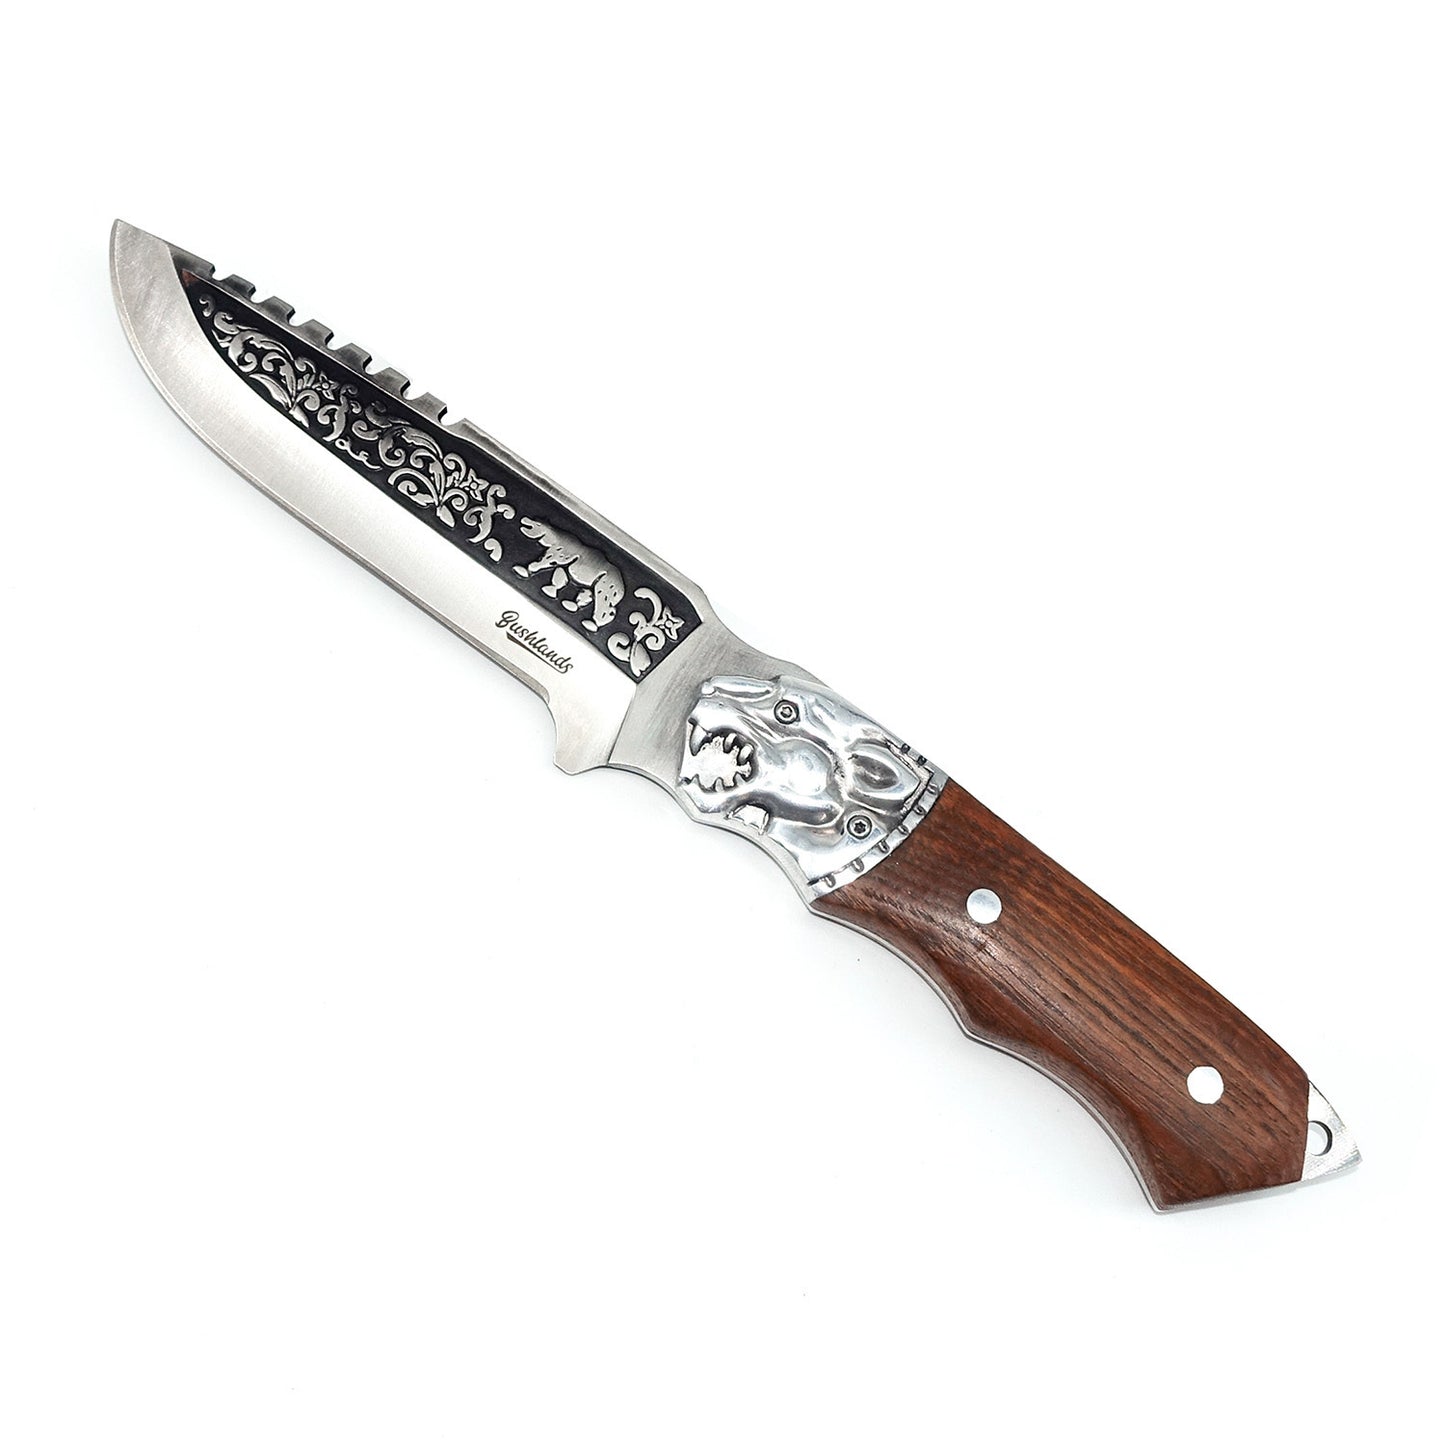 Bushlands Bushlands Fix Blade Hunting Knife 5.5 Inch Coated Blade - With Polished Pakkawood Handle #1575 White Smoke